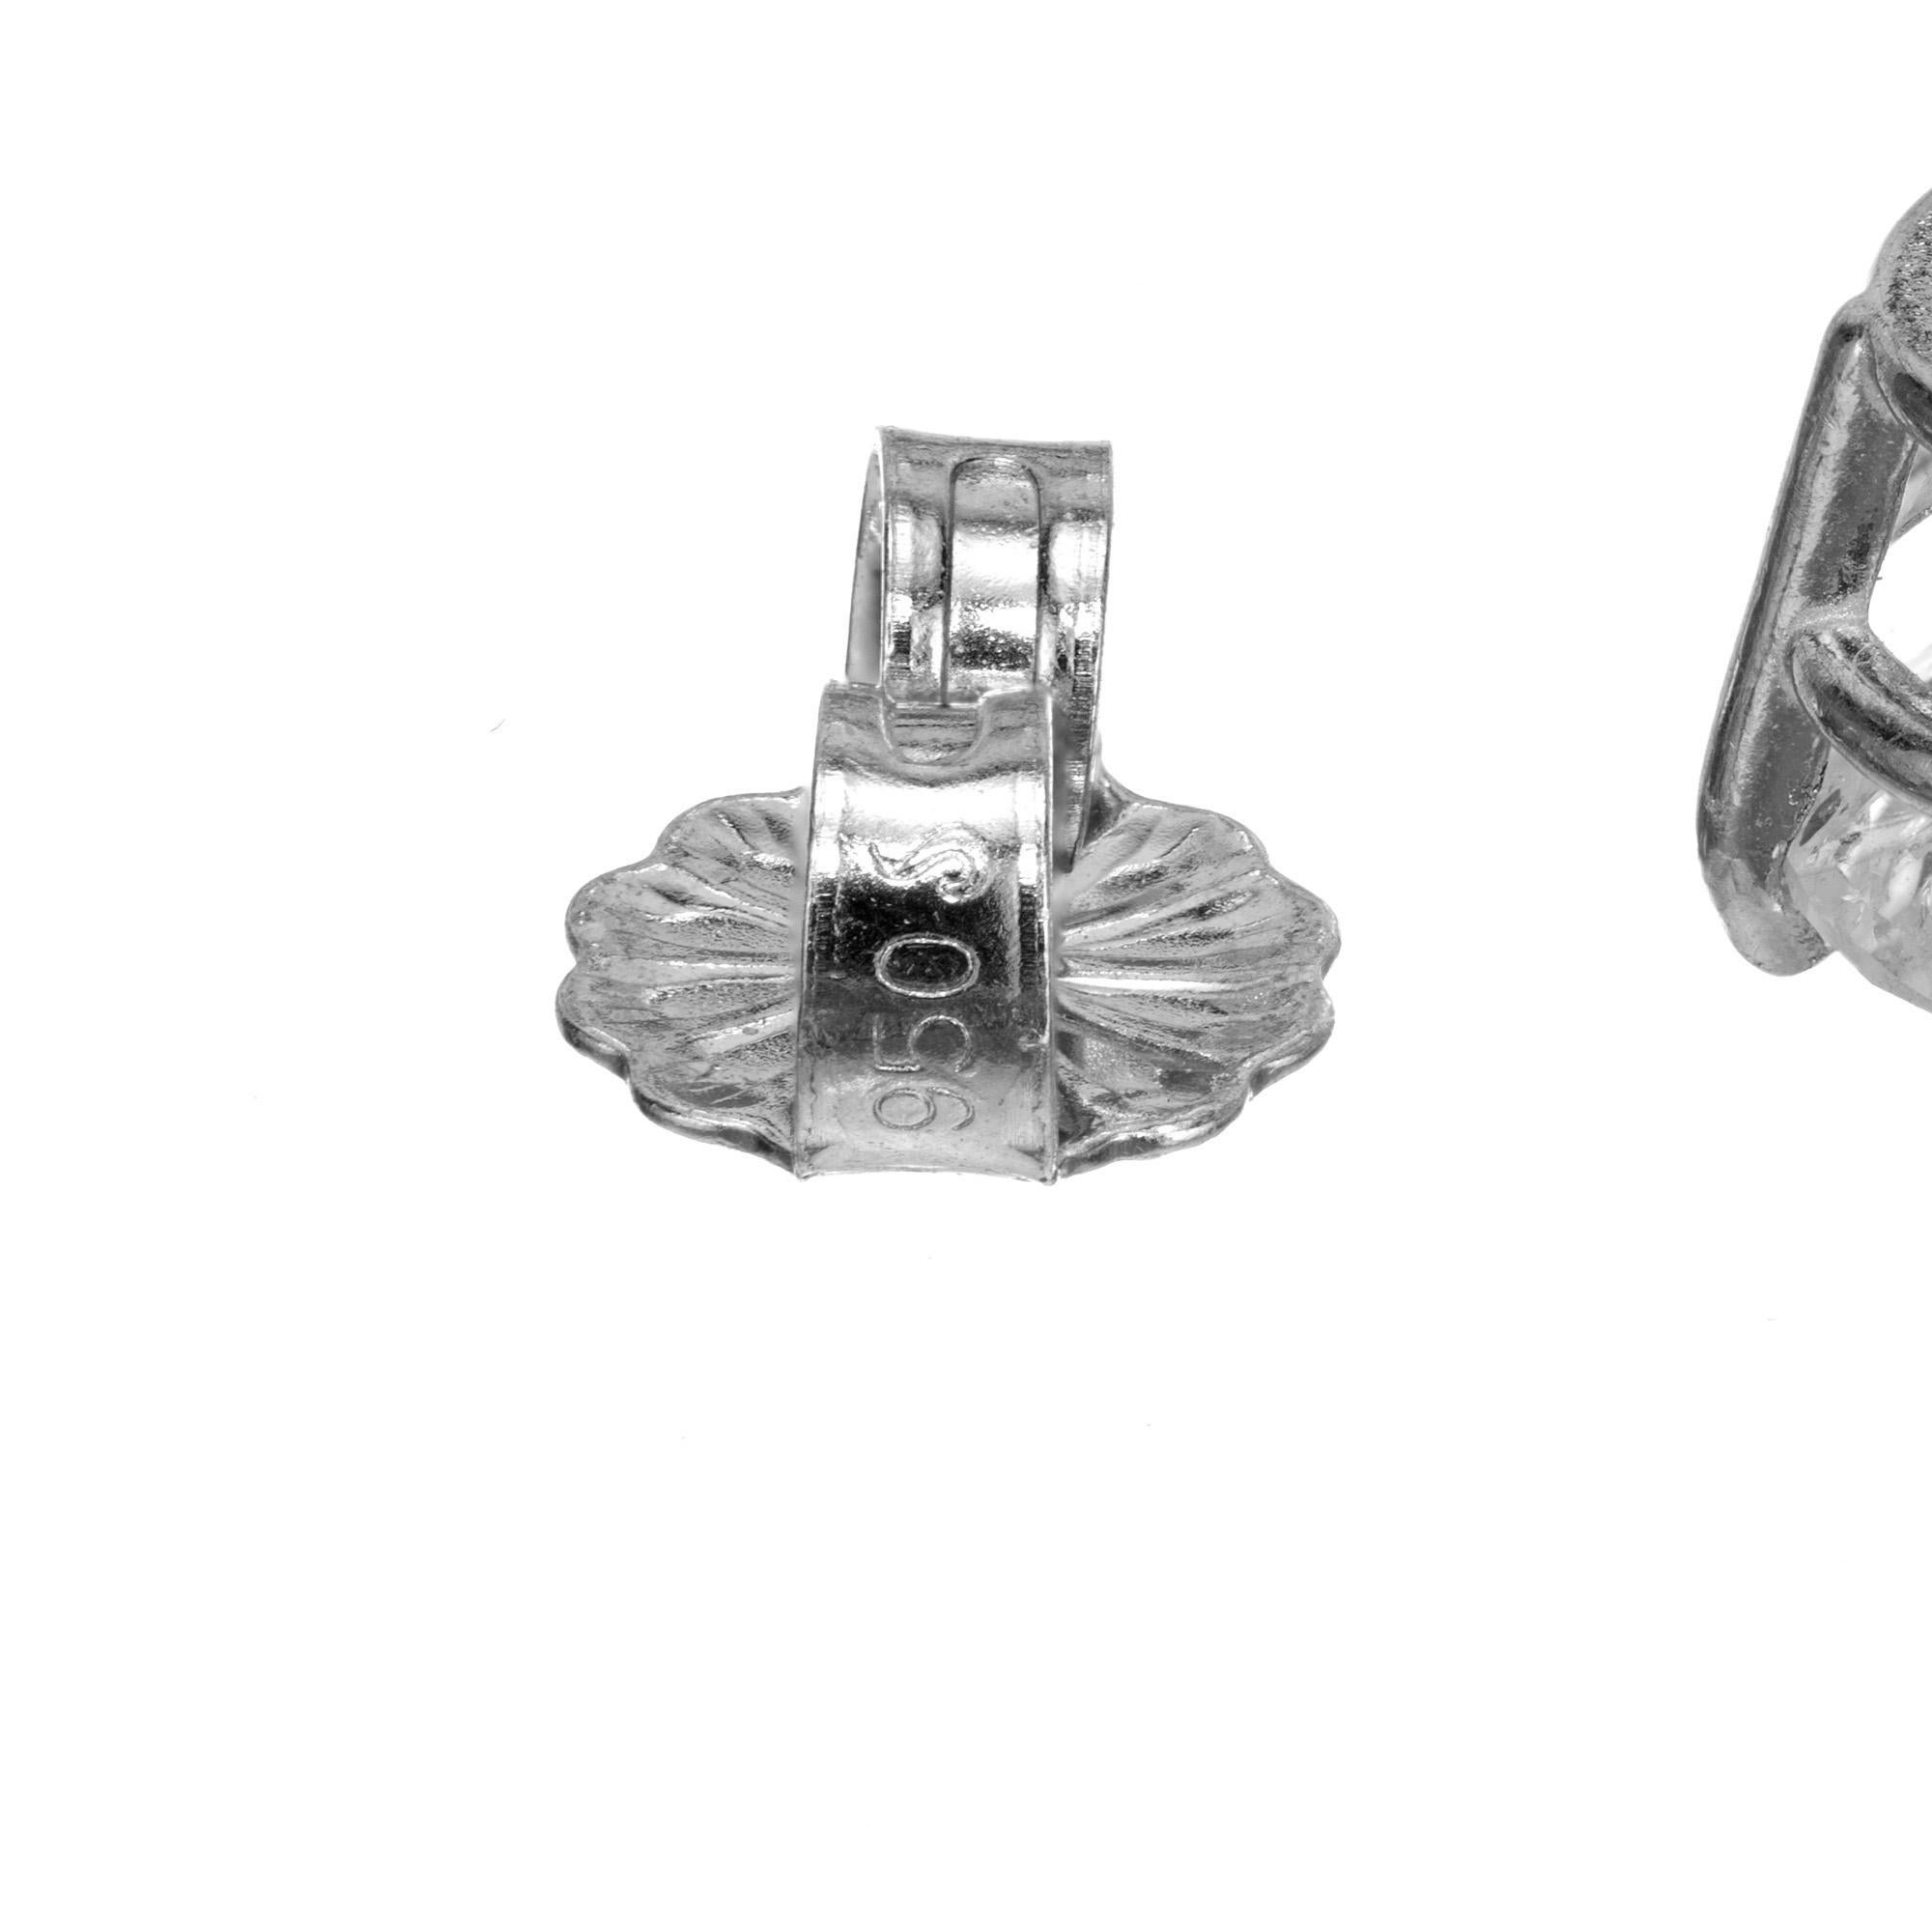 Klassische 4-Zacken-Diamant-Ohrstecker. Perfekt aufeinander abgestimmte 2 EGL-zertifizierte F-G SI3 1,14cts & 1,15cts runde Diamanten im Brillantschliff in Platin-Korbfassung. Entworfen und hergestellt in der Werkstatt von Peter Suchy.

Das